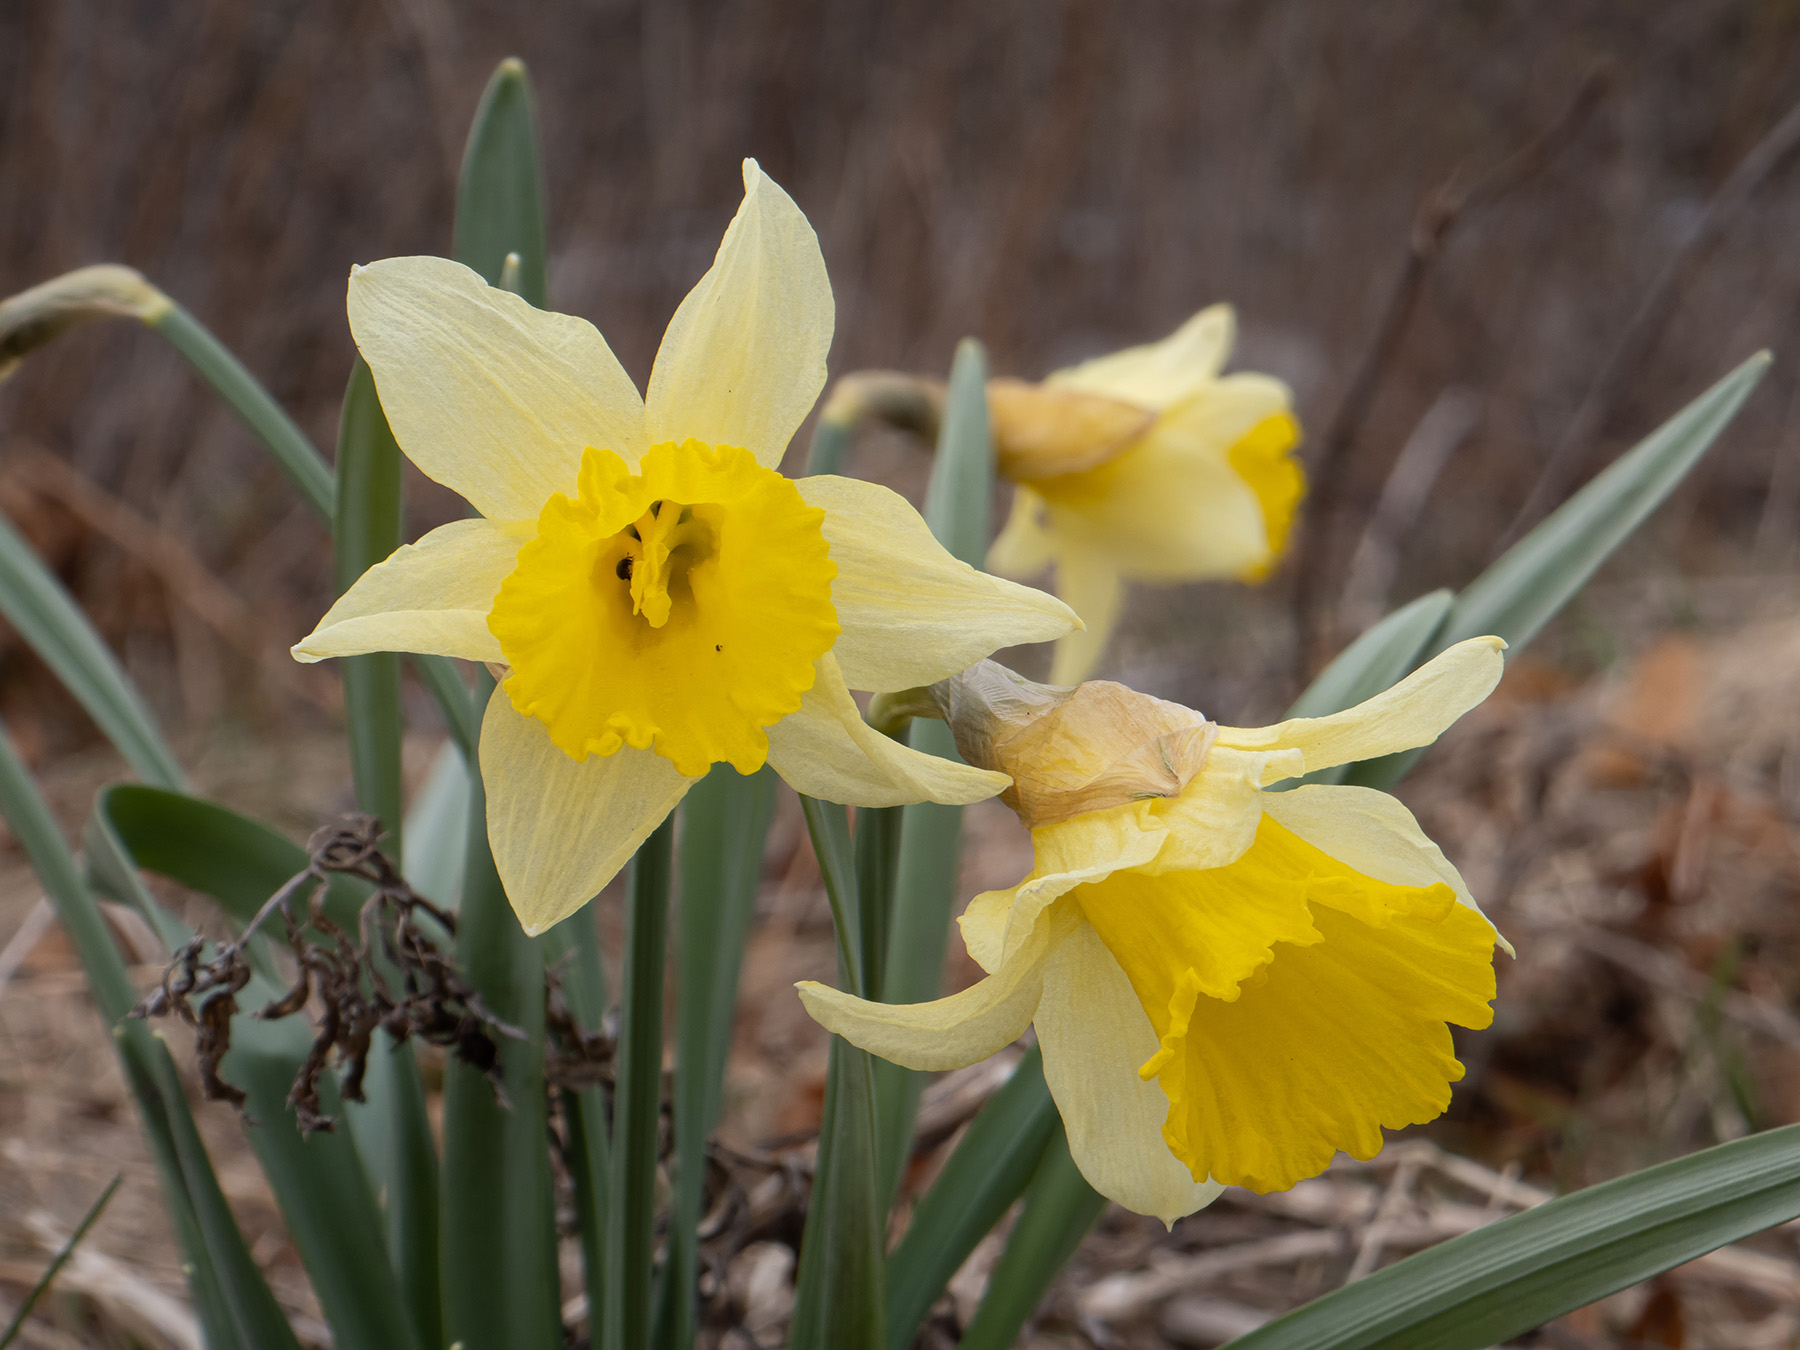 Нарцисс ложный (Narcissus pseudonarcissus) в природном парке G?rv?ln, Стокгольм, апрель 2020 года. Автор фото: Сутормина Марина